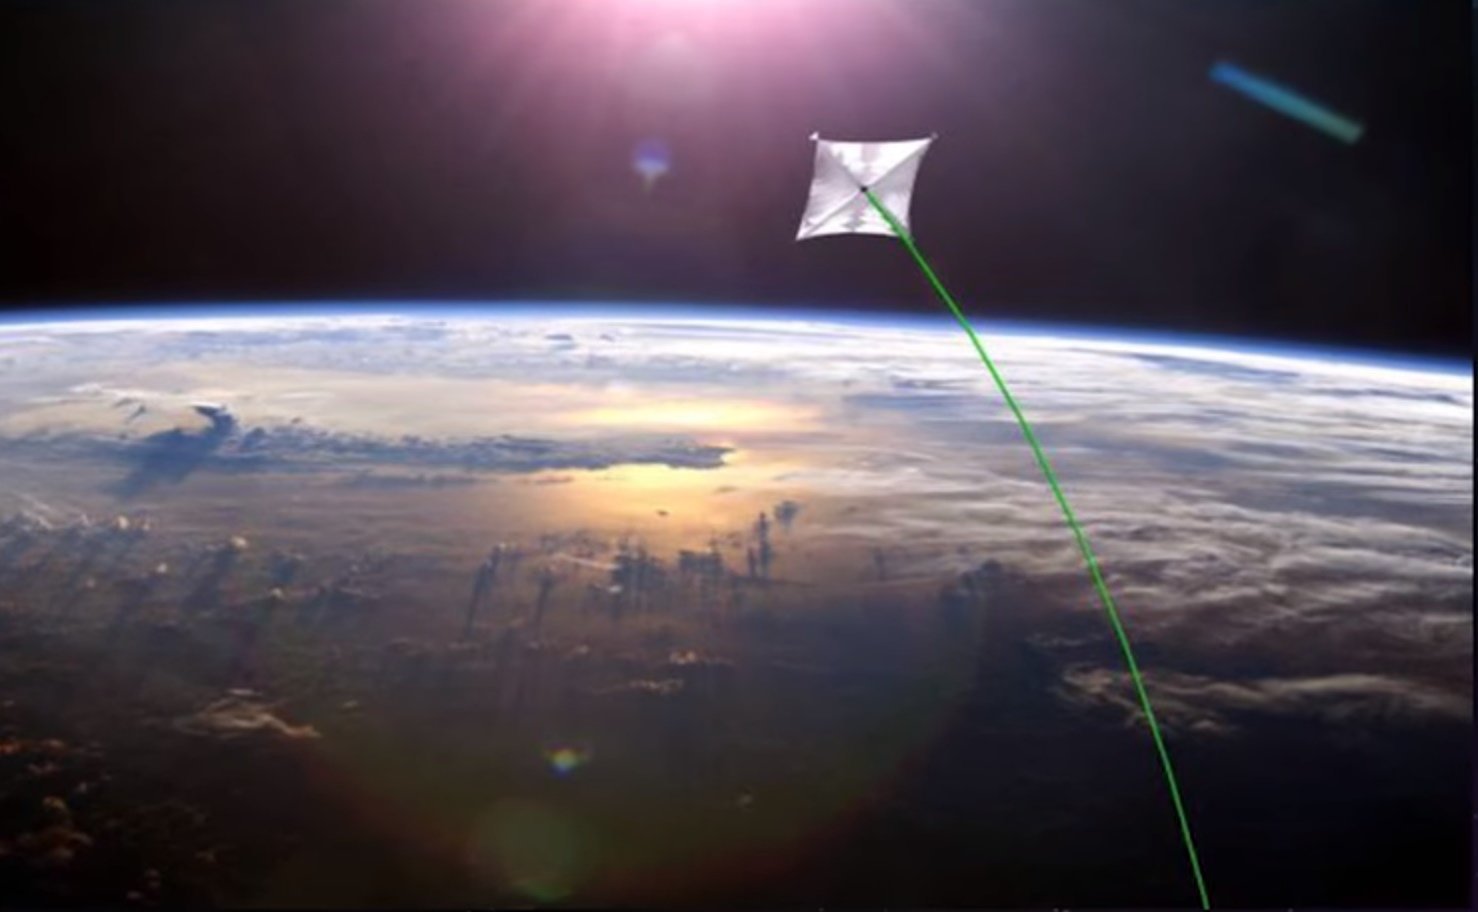 Moćni laserski pogonski sustav mogao bi omogućiti letjelici munjevit let na Mars